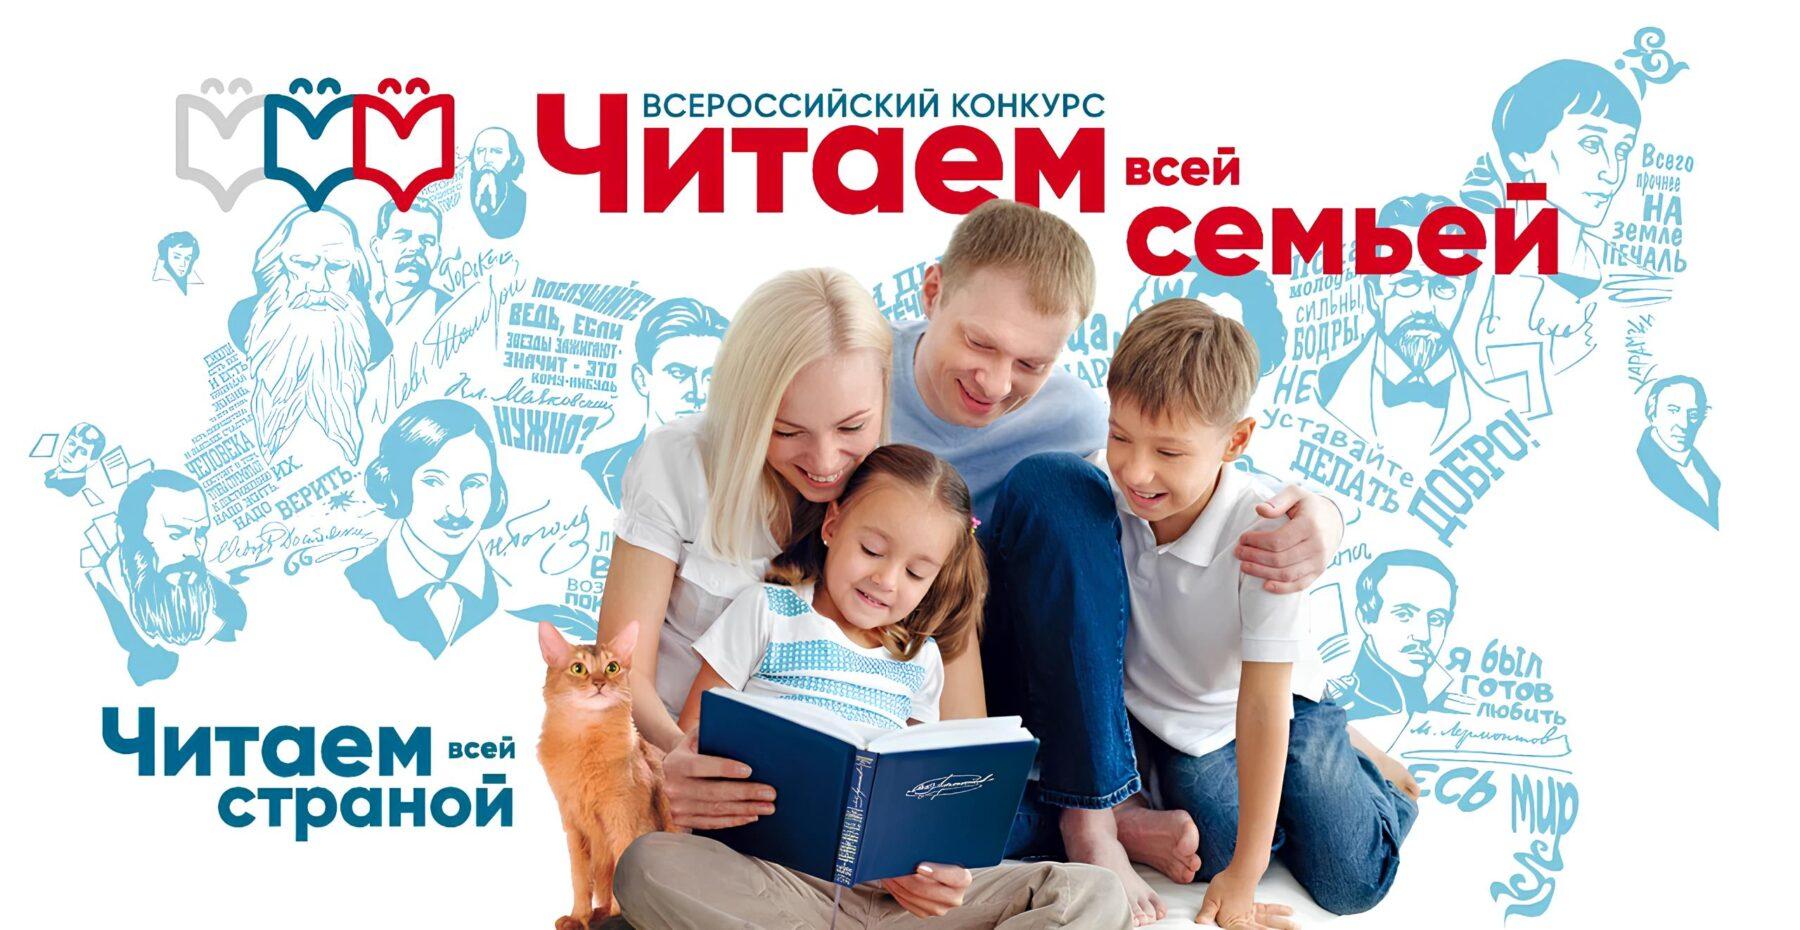 Приглашаем к участию во Всероссийском конкурсе «Читаем всей семьей»!